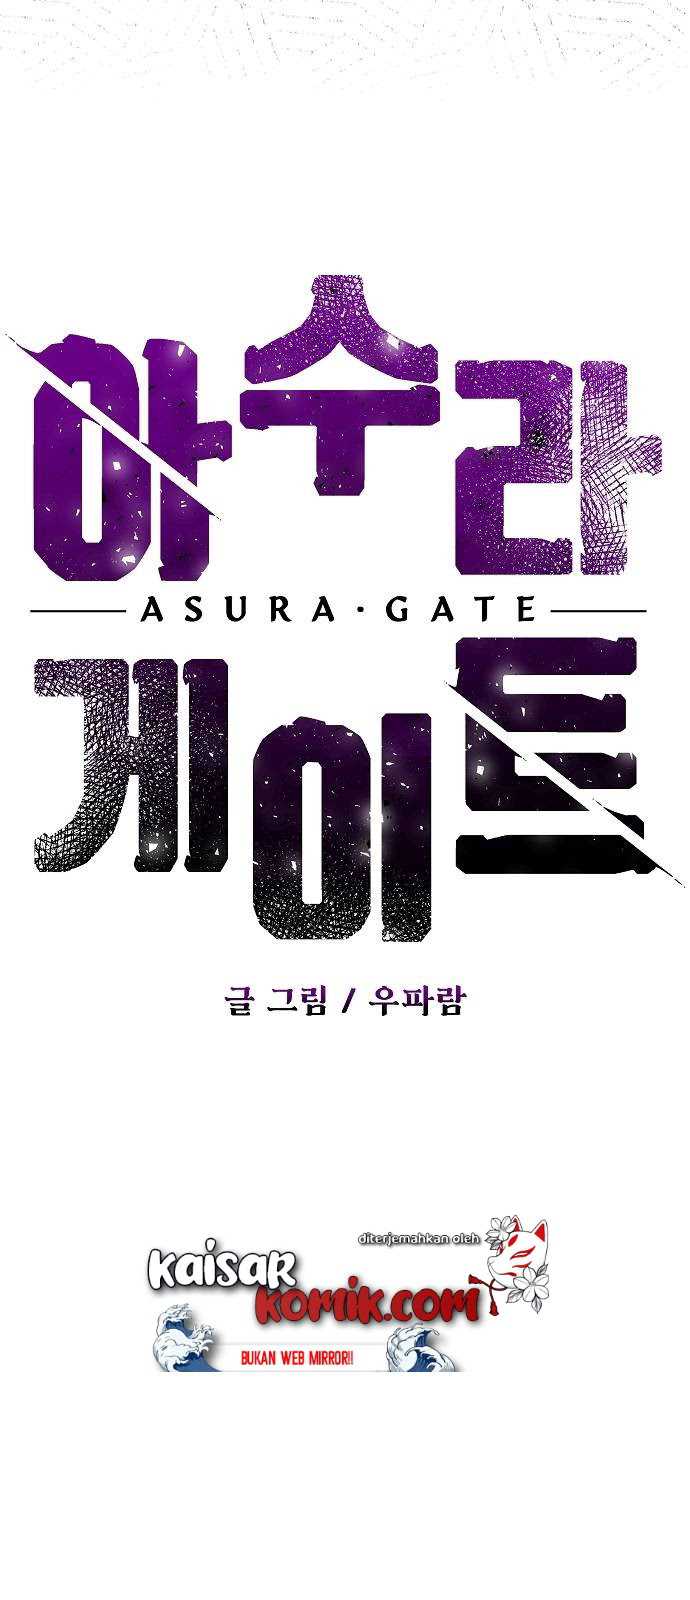 Asura Gate Chapter 1